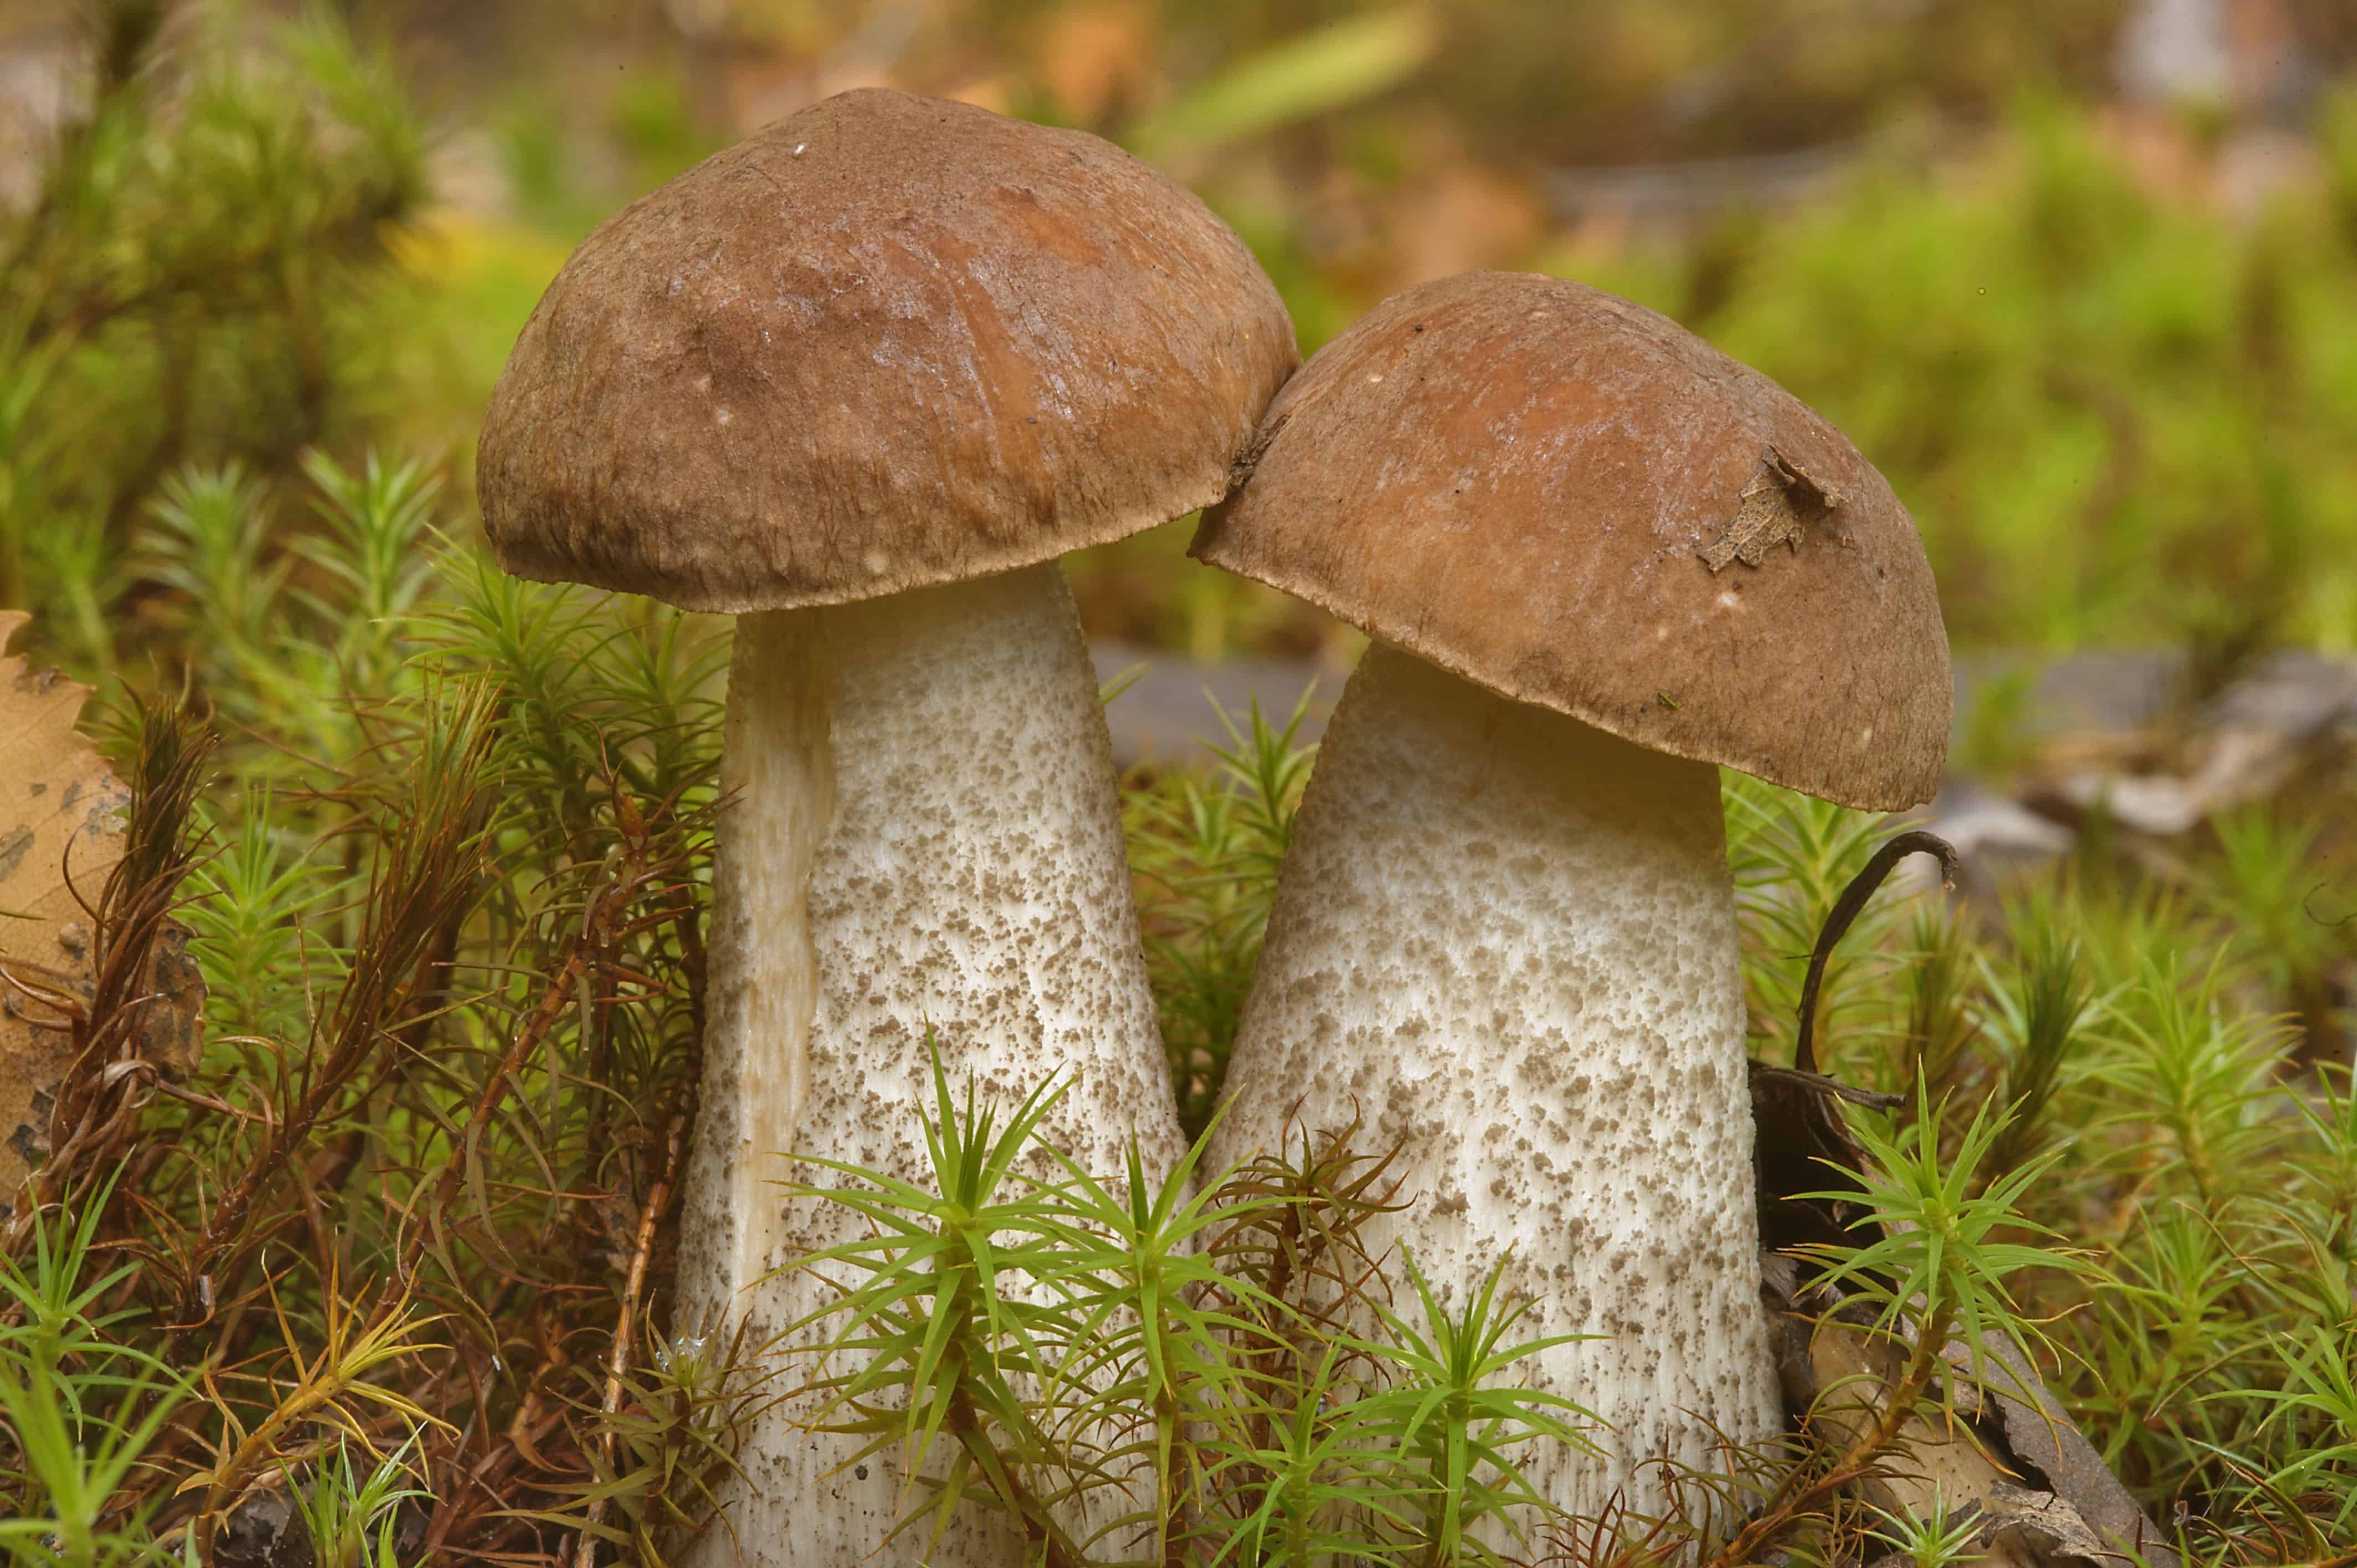 Подберезовик группа грибов. Leccinum scabrum подберезовик обыкновенный. Подберезовик обыкновенный (обабок). Обабки белые грибы подберезовики. Подберезовик обыкновенный (обабок черный).